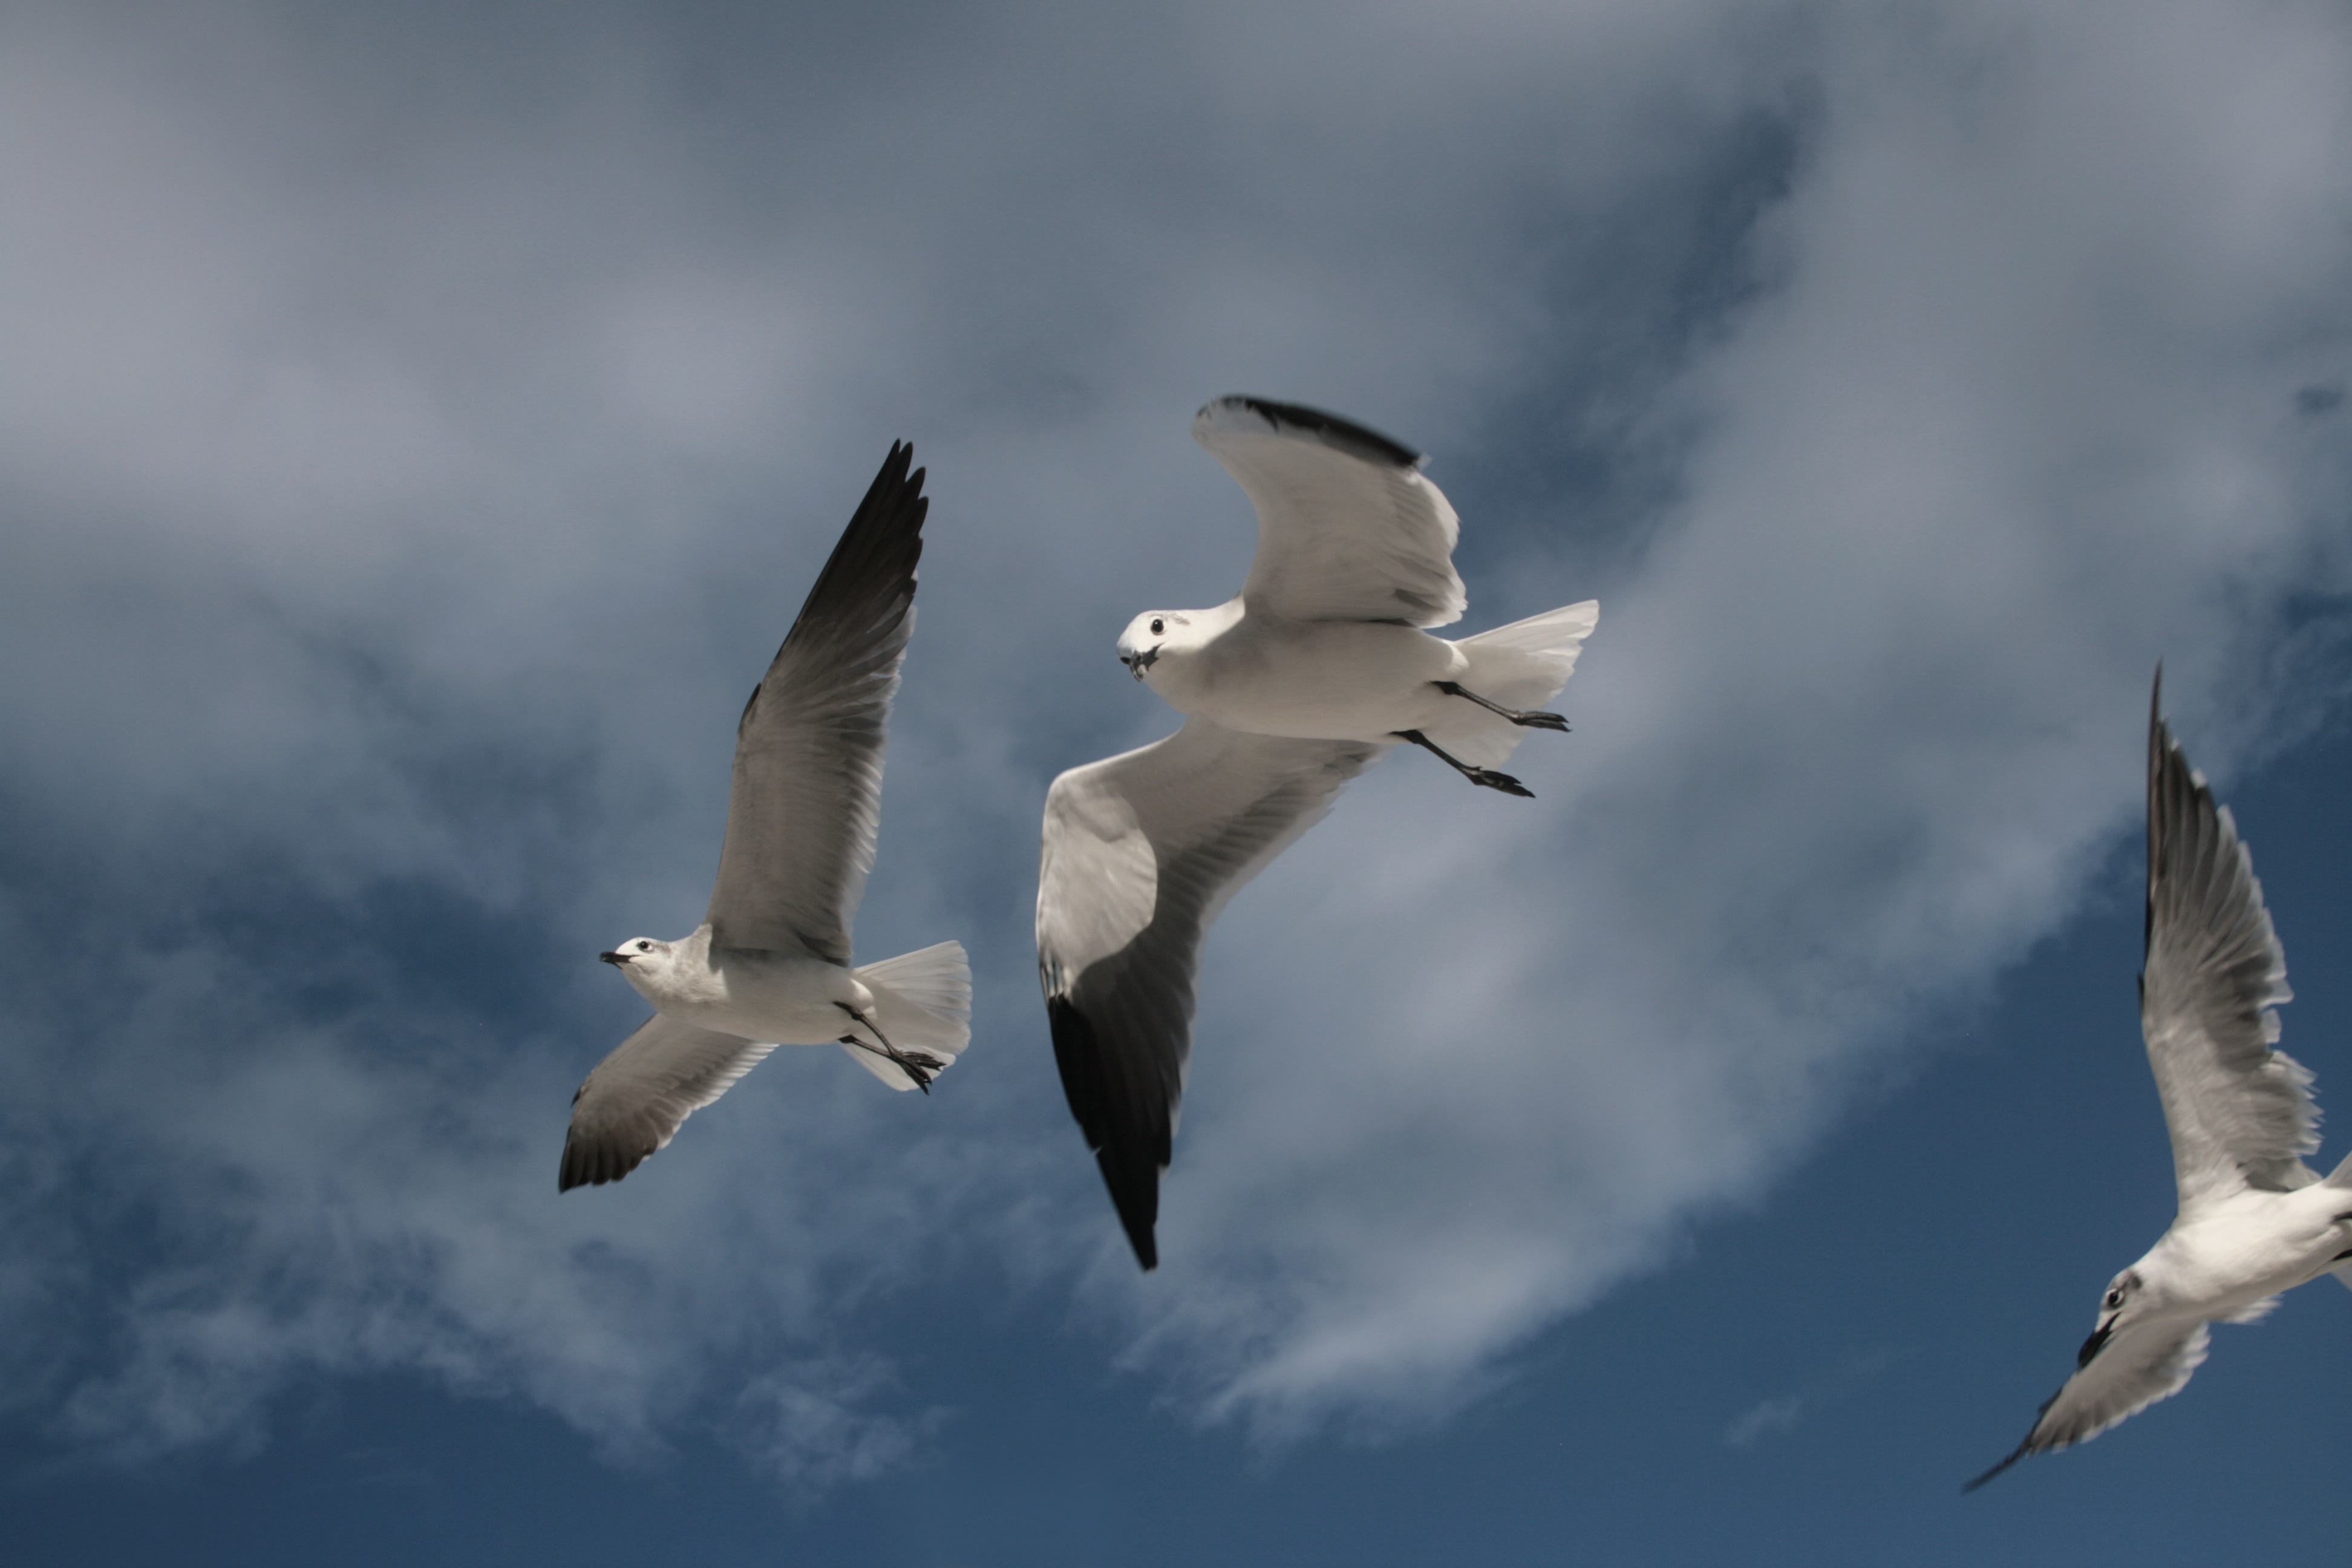 3 white and grey gulls